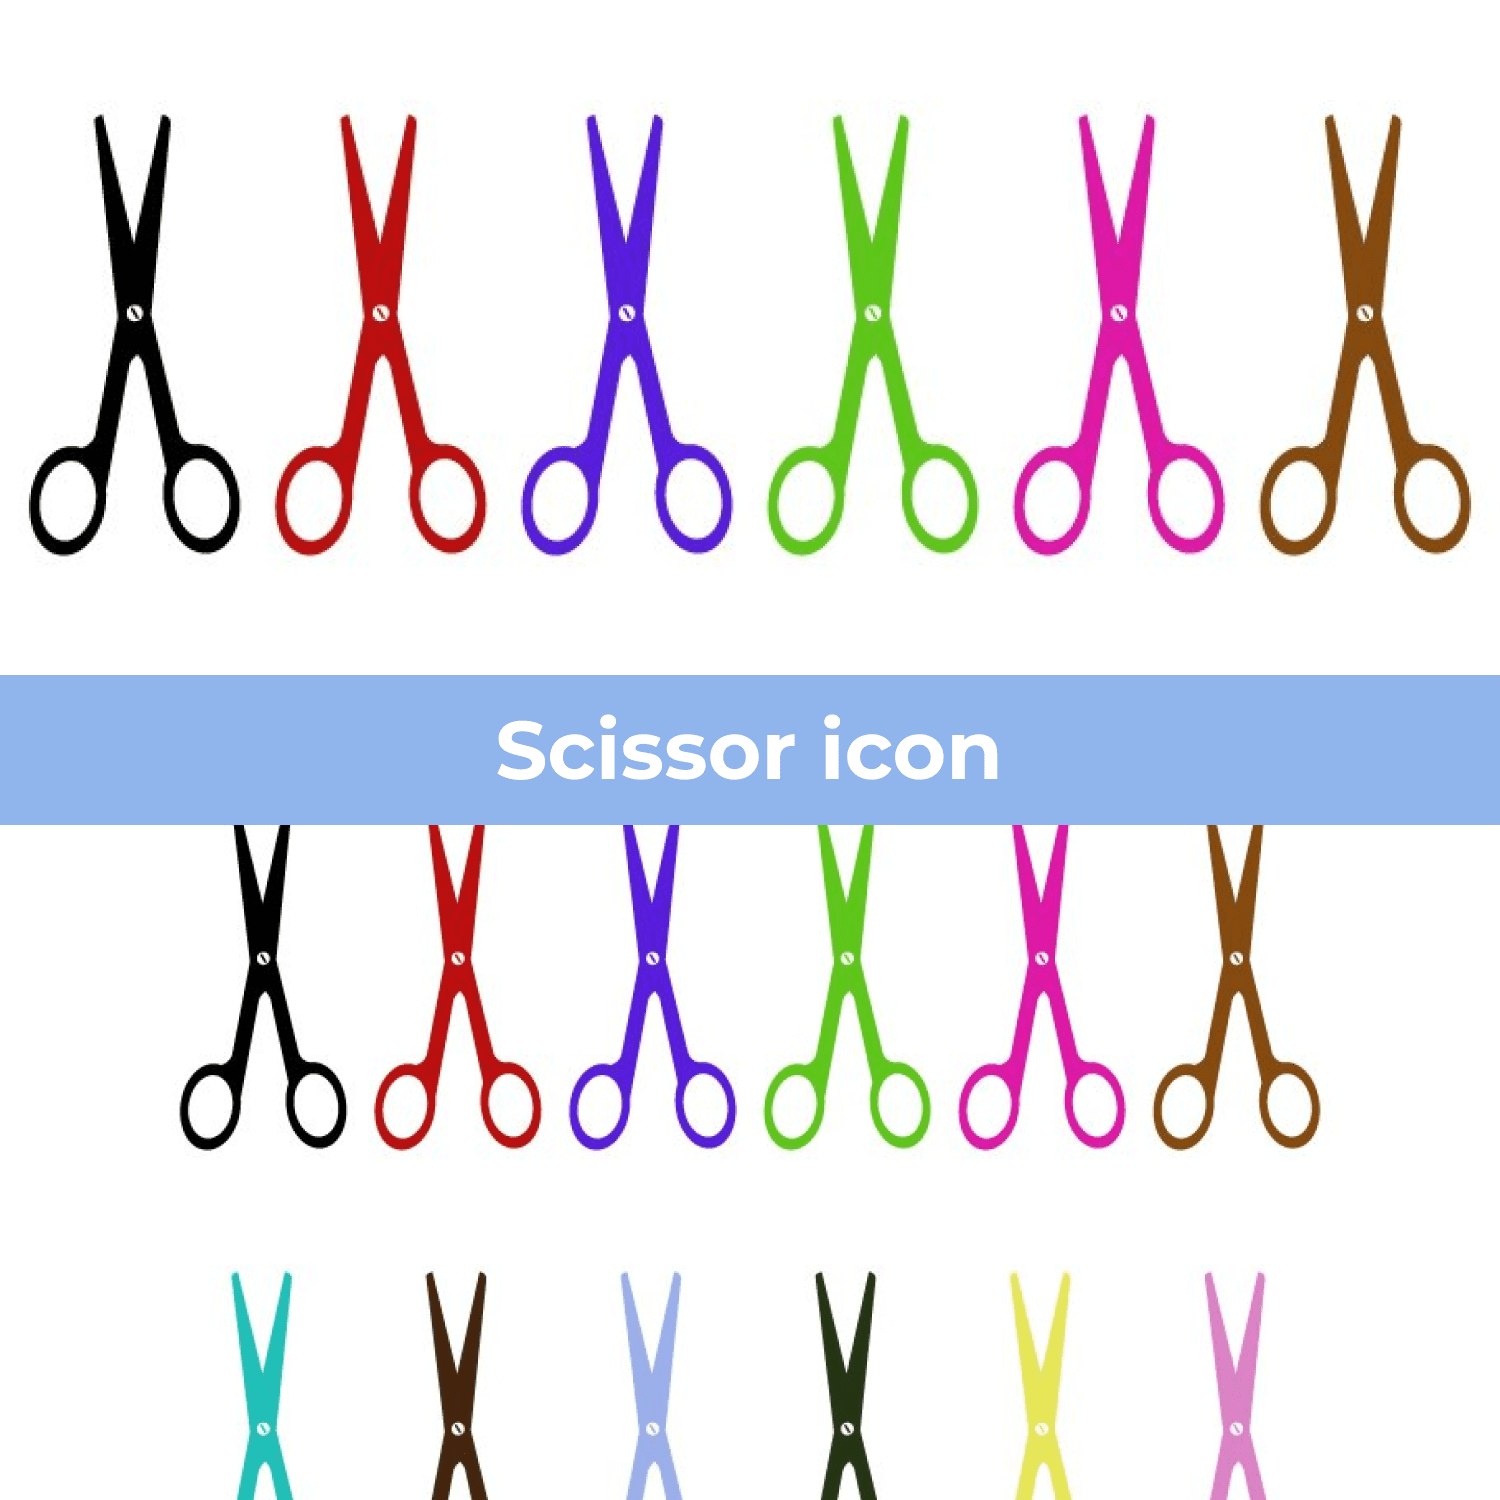 Scissor icon cover image.